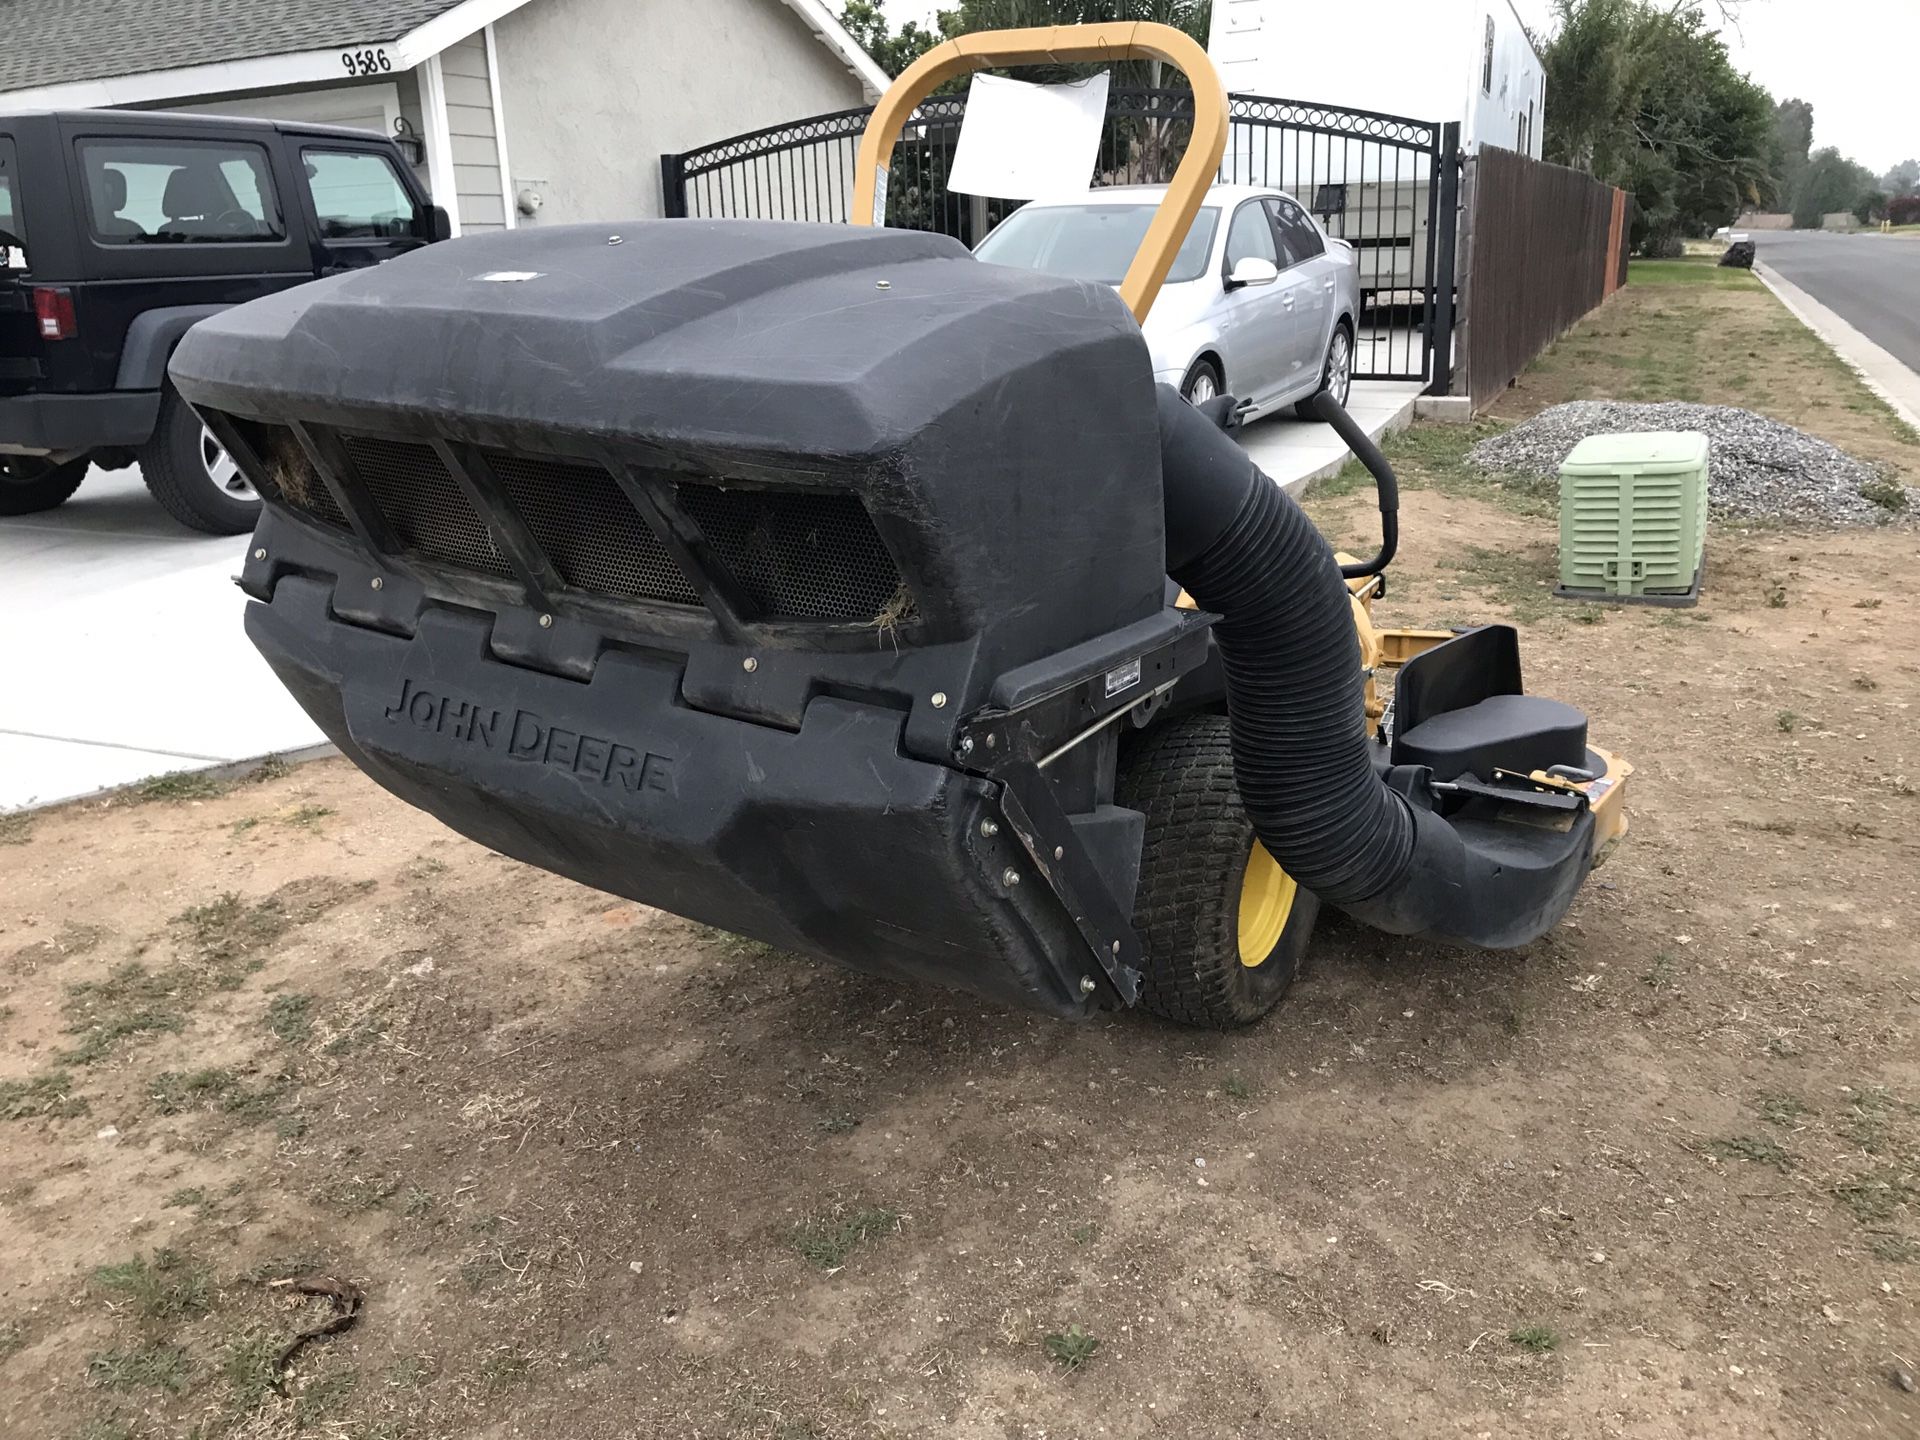 John Deere Z930M zero turn lawn tractor